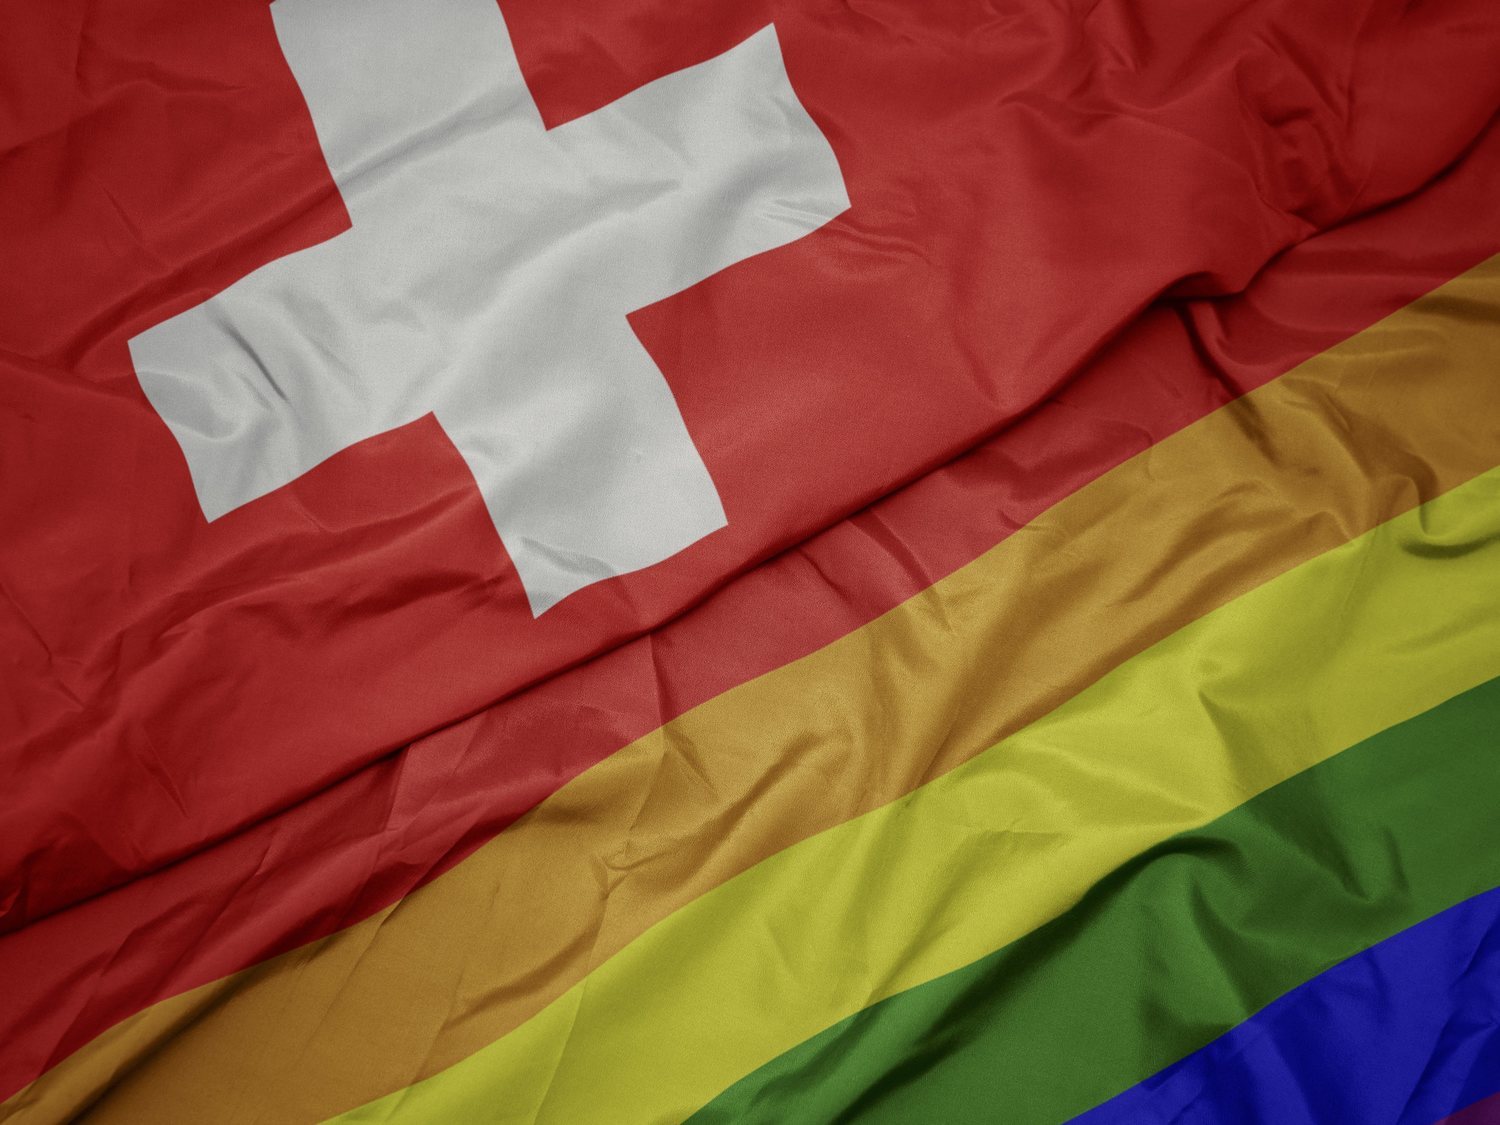 Suiza aprueba una enmienda que penalizará la discriminación al colectivo LGTBI